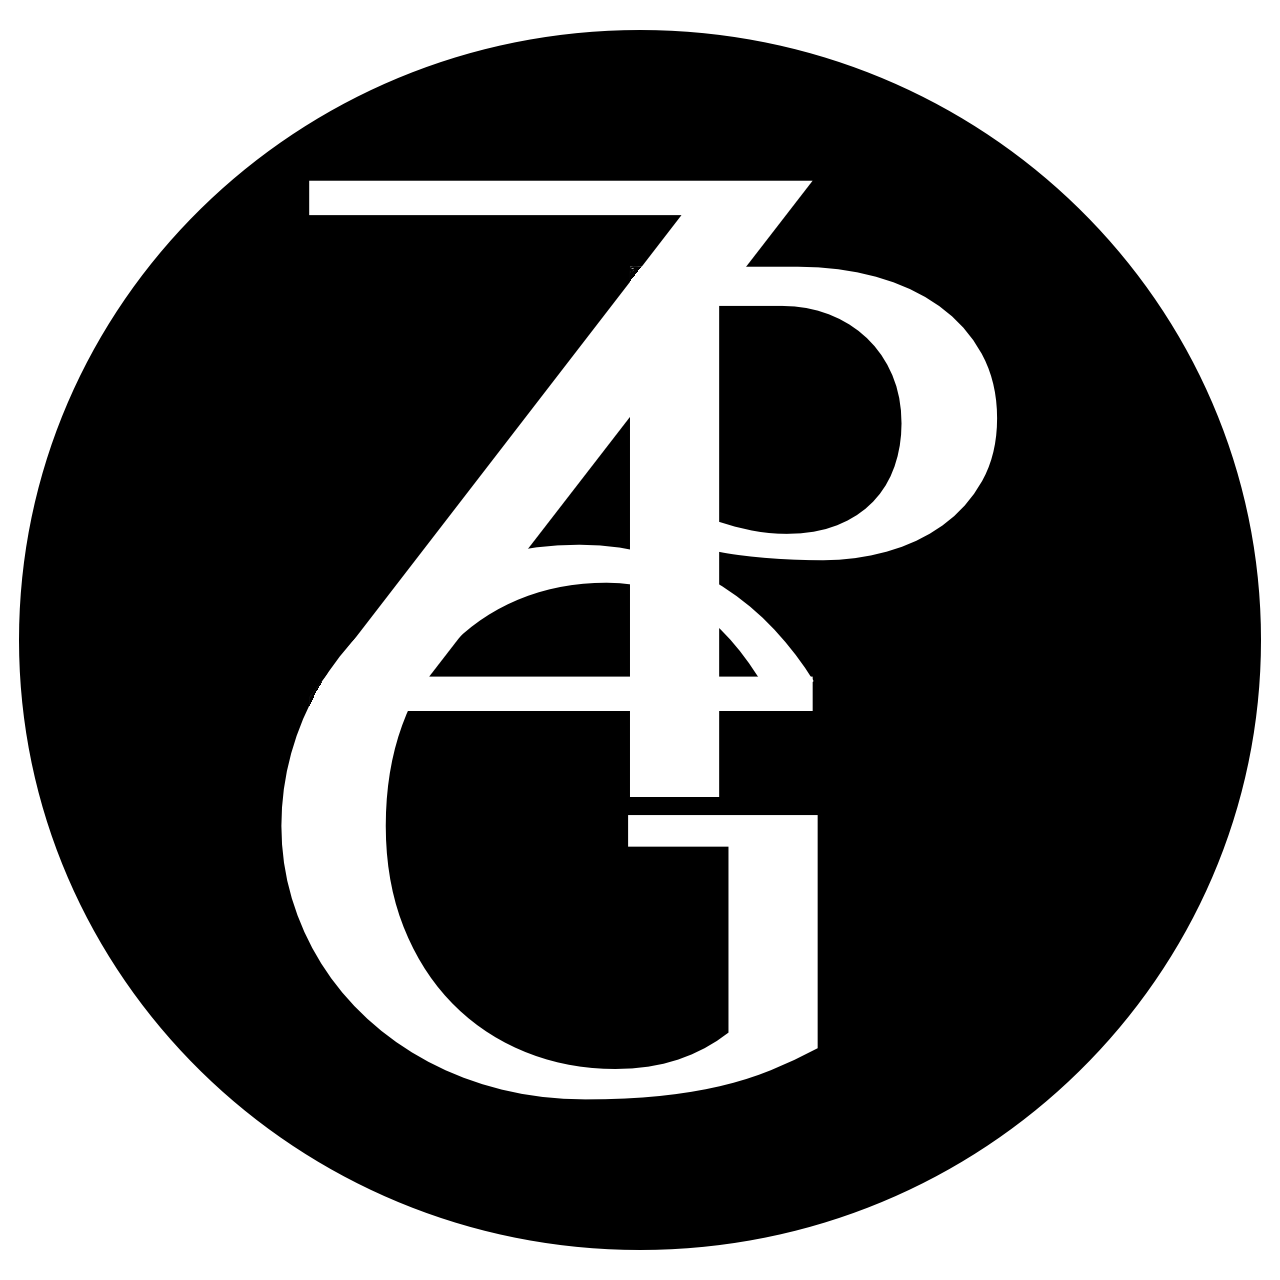 ZPG LLC